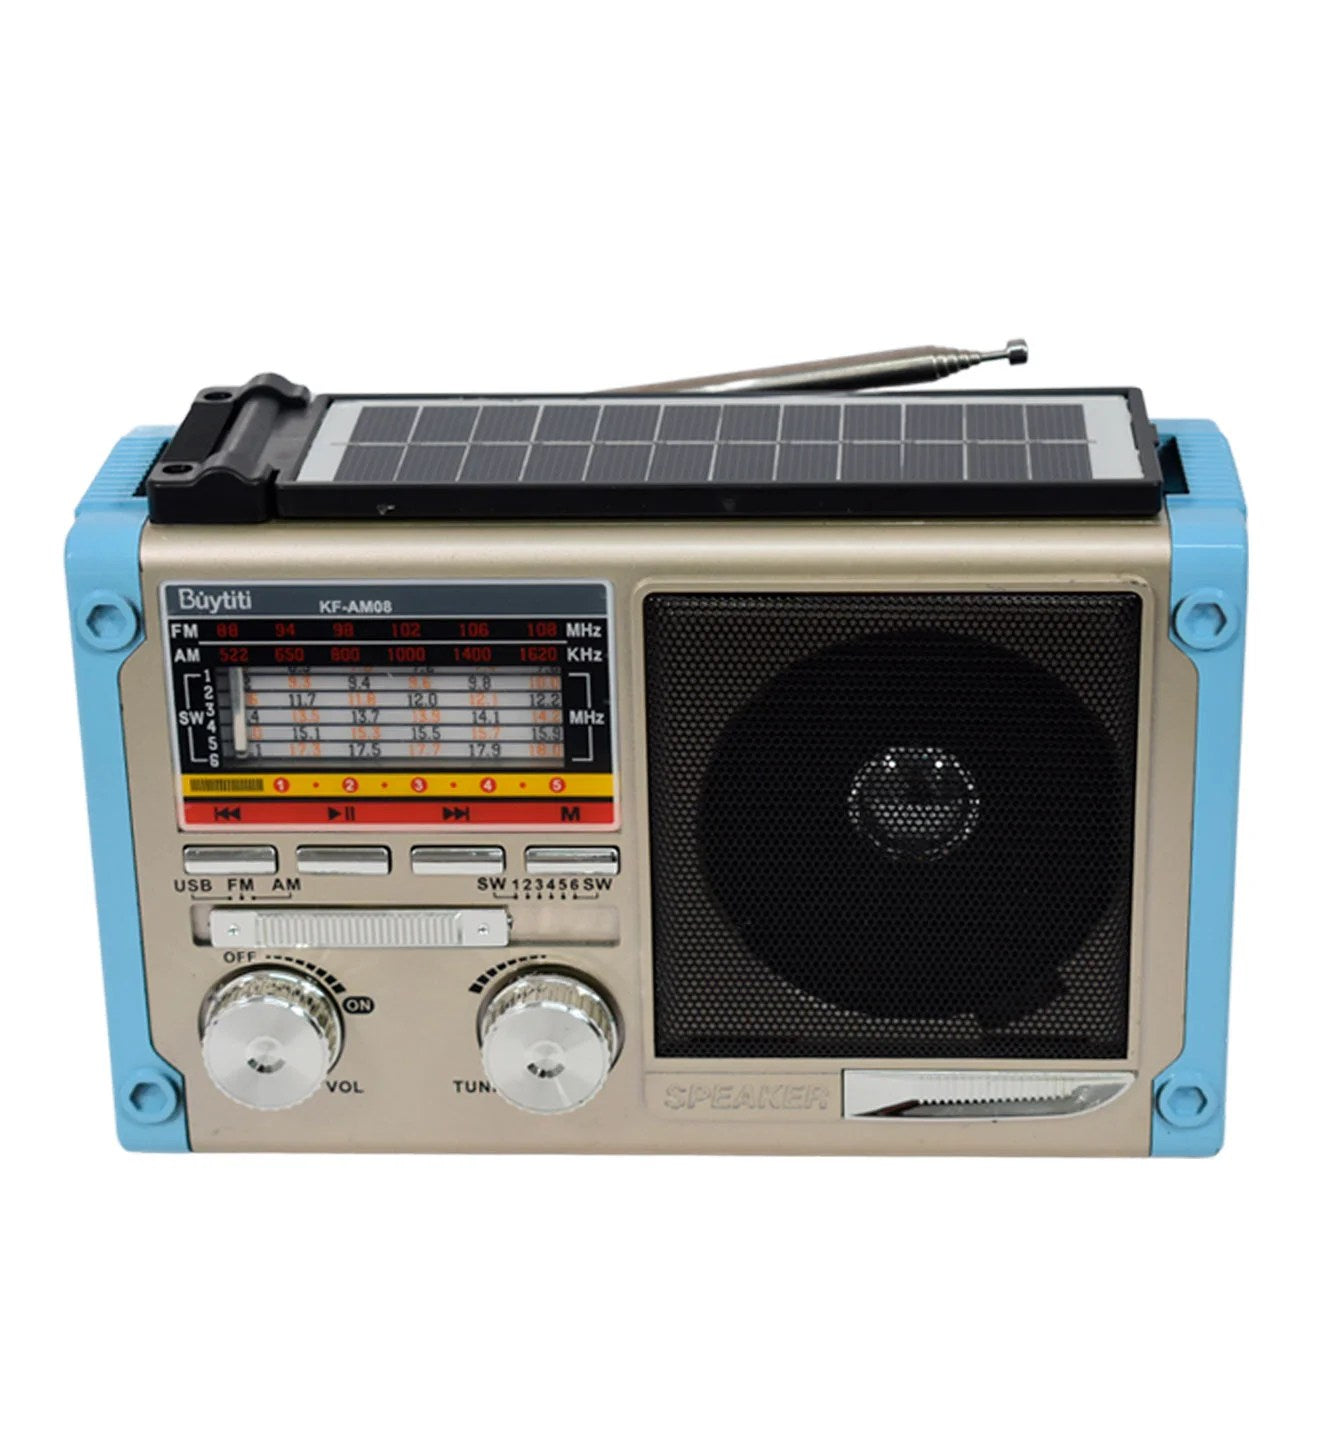 Radio solar buytiti AM/FM KF-AM08